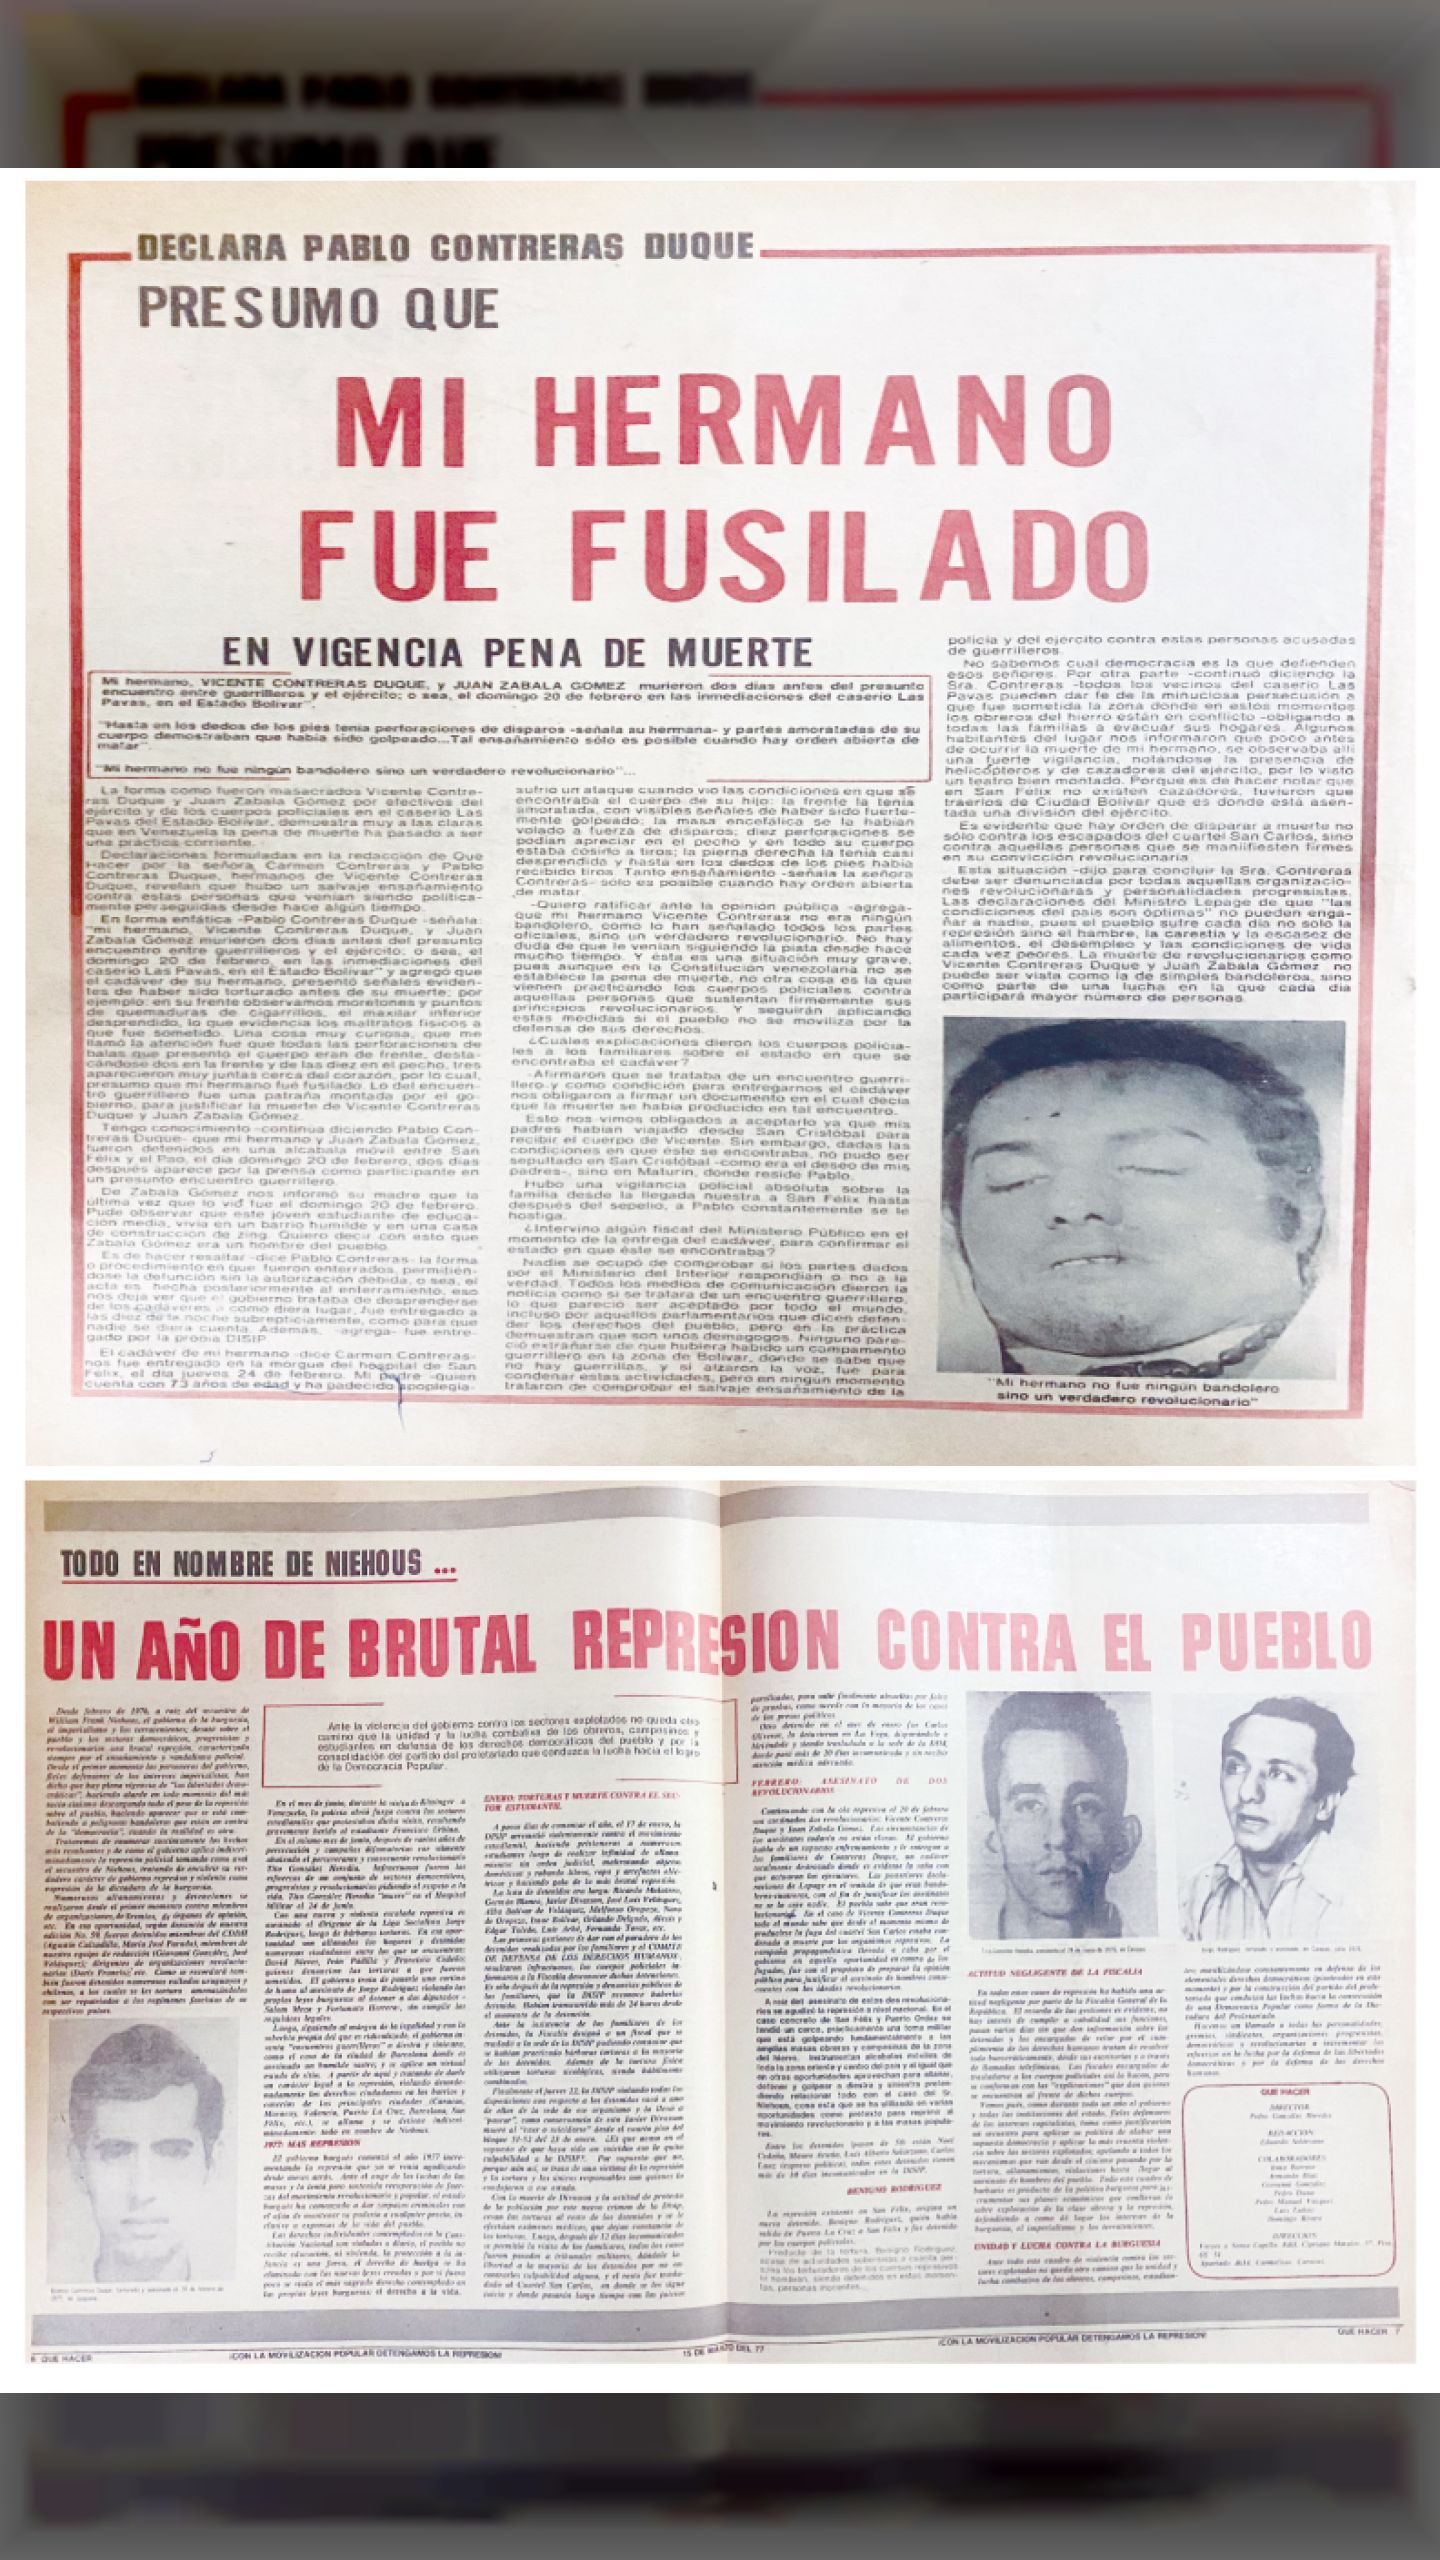 SON TORTURADOS Y FUSILADOS VICENTE CONTRERAS DUQUE Y JUAN ZABALA GÓMEZ ¿QUÉ HACER?, 15 de marzo de 1977